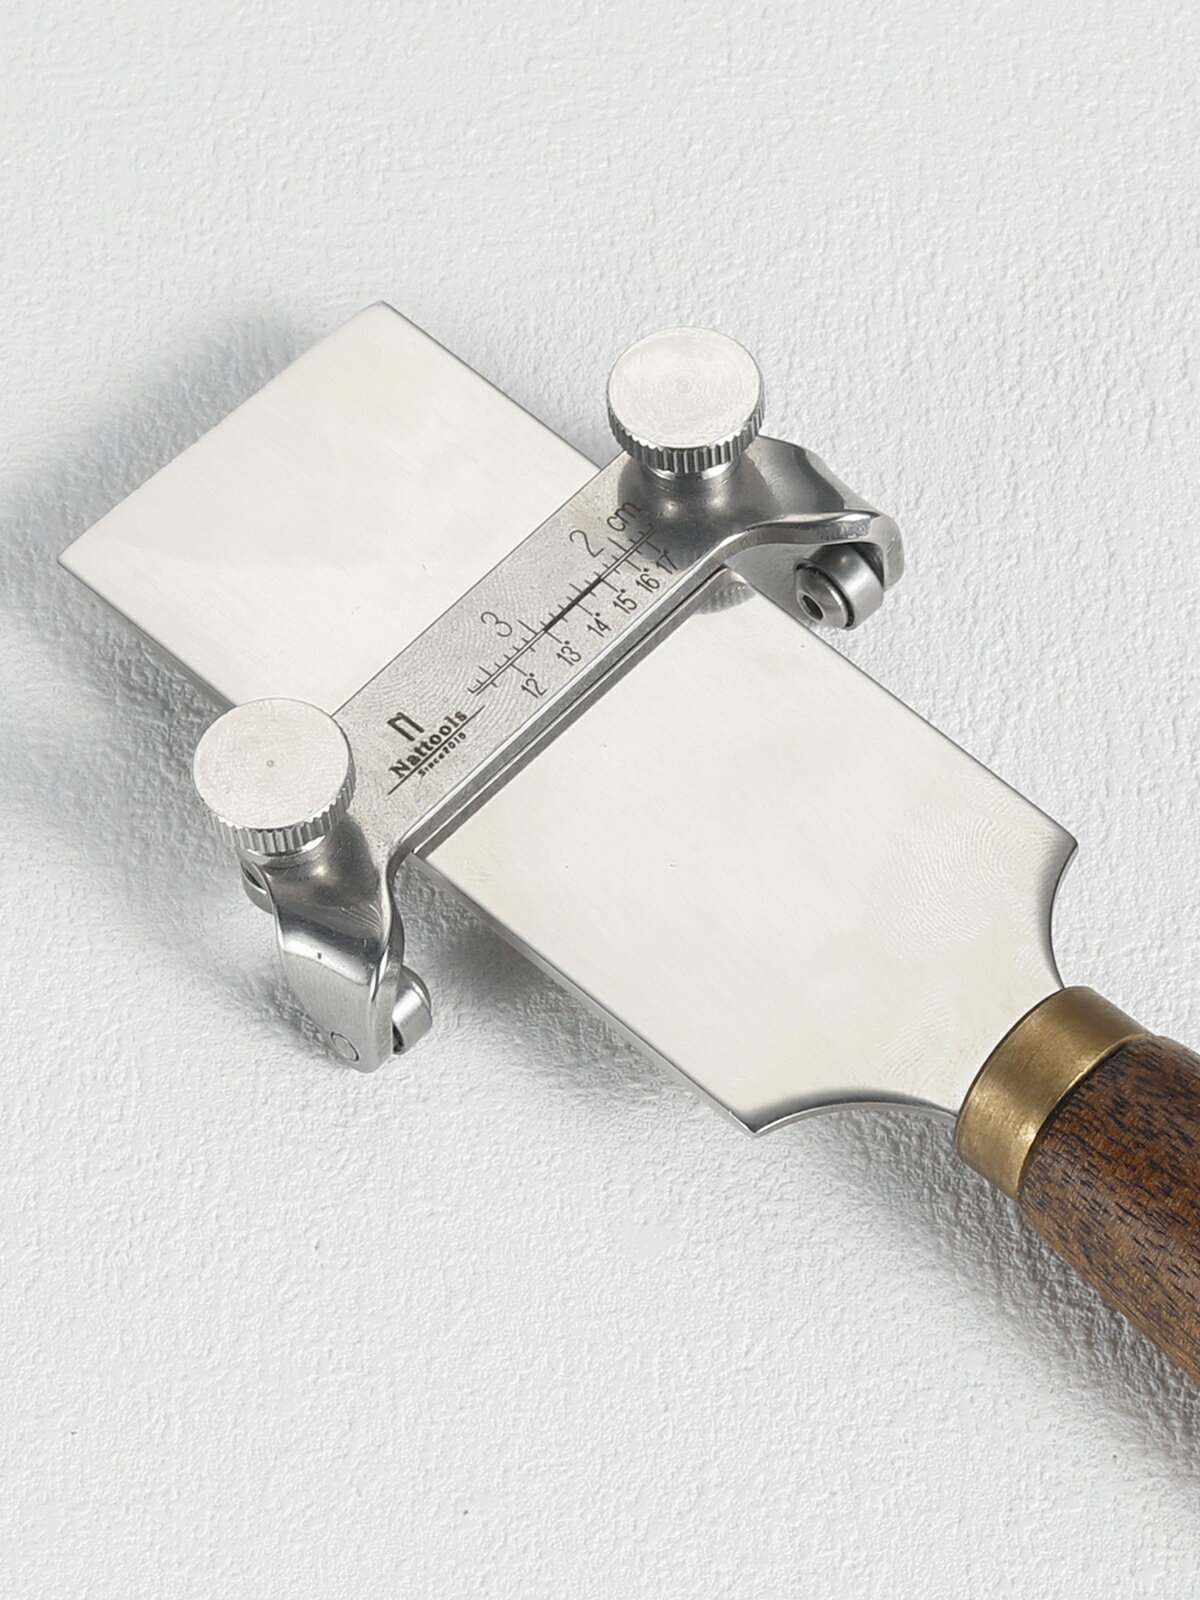 Nattools定角磨刀器裁皮刀專用定角磨刀器自動磨刀器低刃角磨刀器